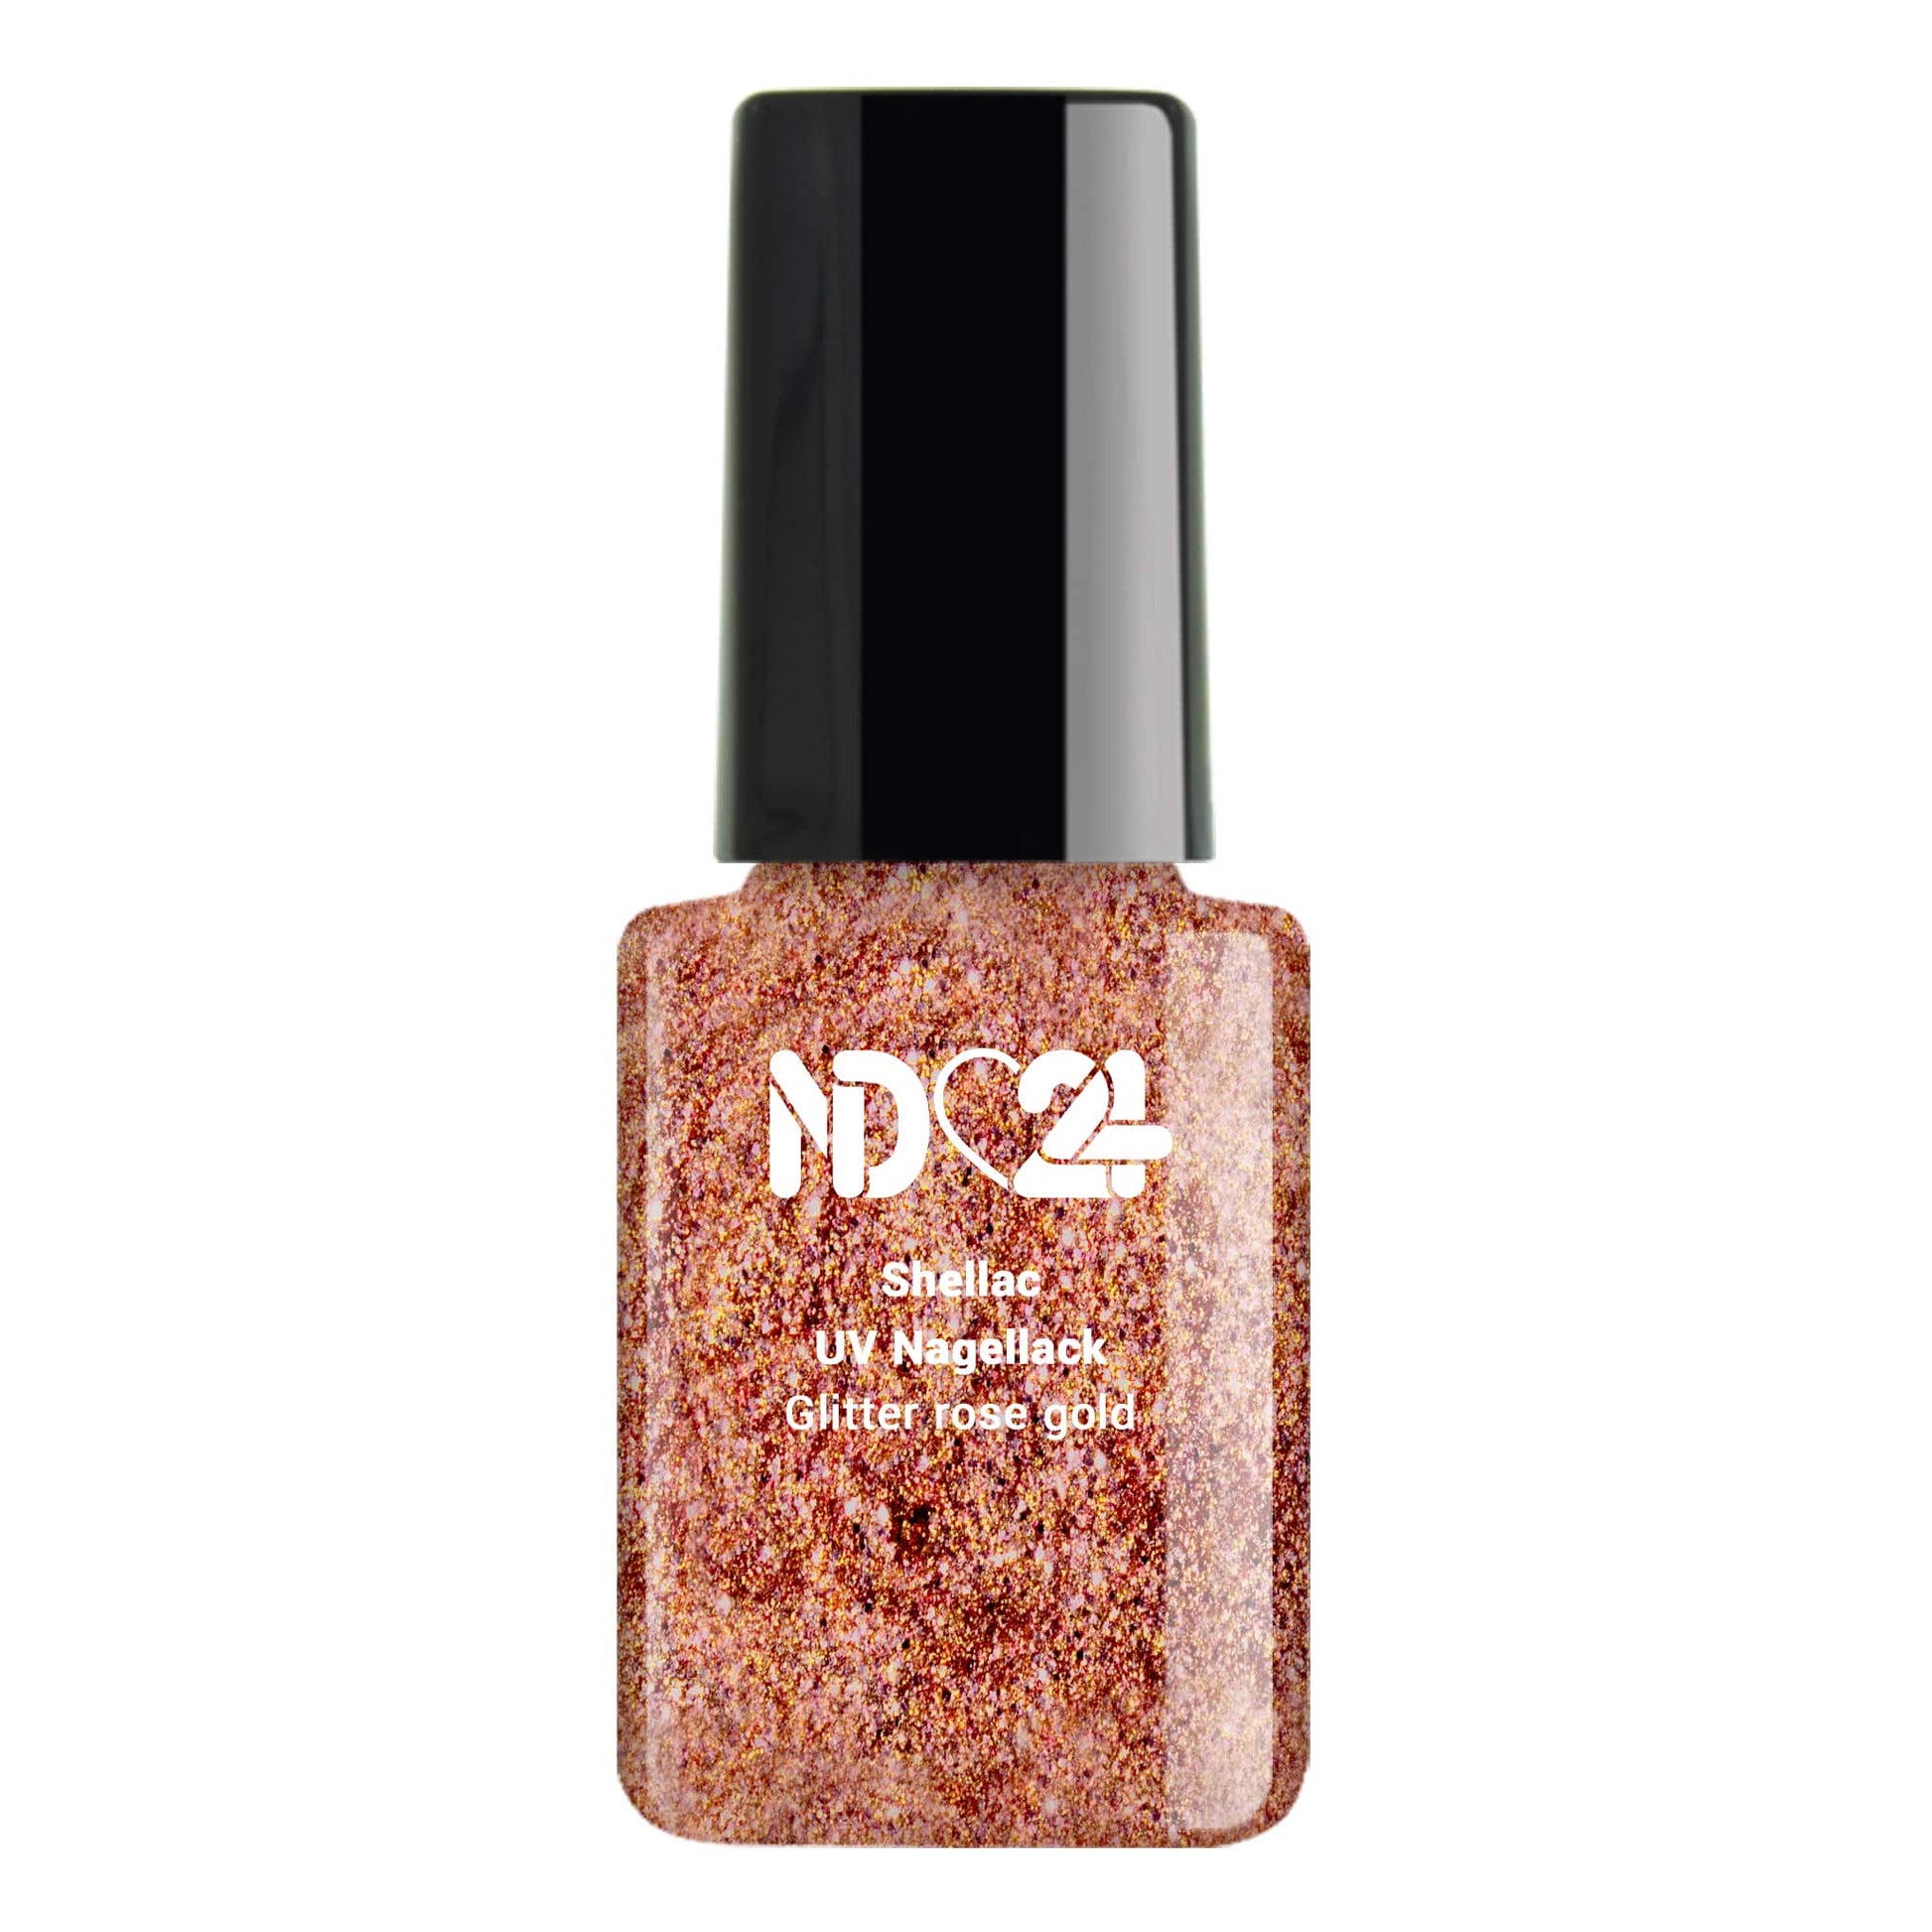 Shellac Glitter rose gold günstig bestellen 😍 ND24 bei NailDesign